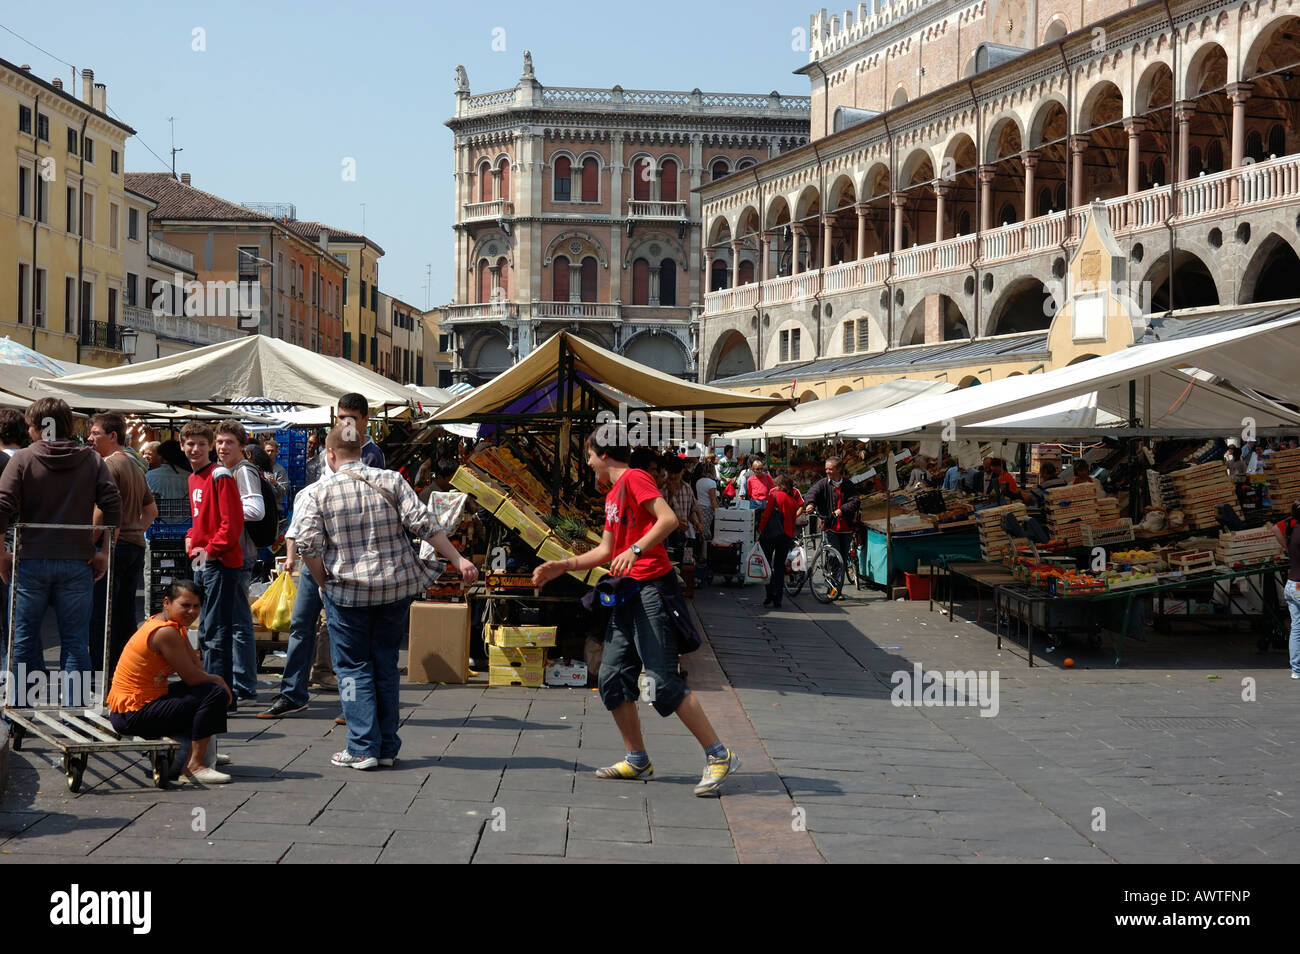 Les gens au marché alimentaire de la Piazza delle Erbe, Padoue, Italie, Europe Banque D'Images